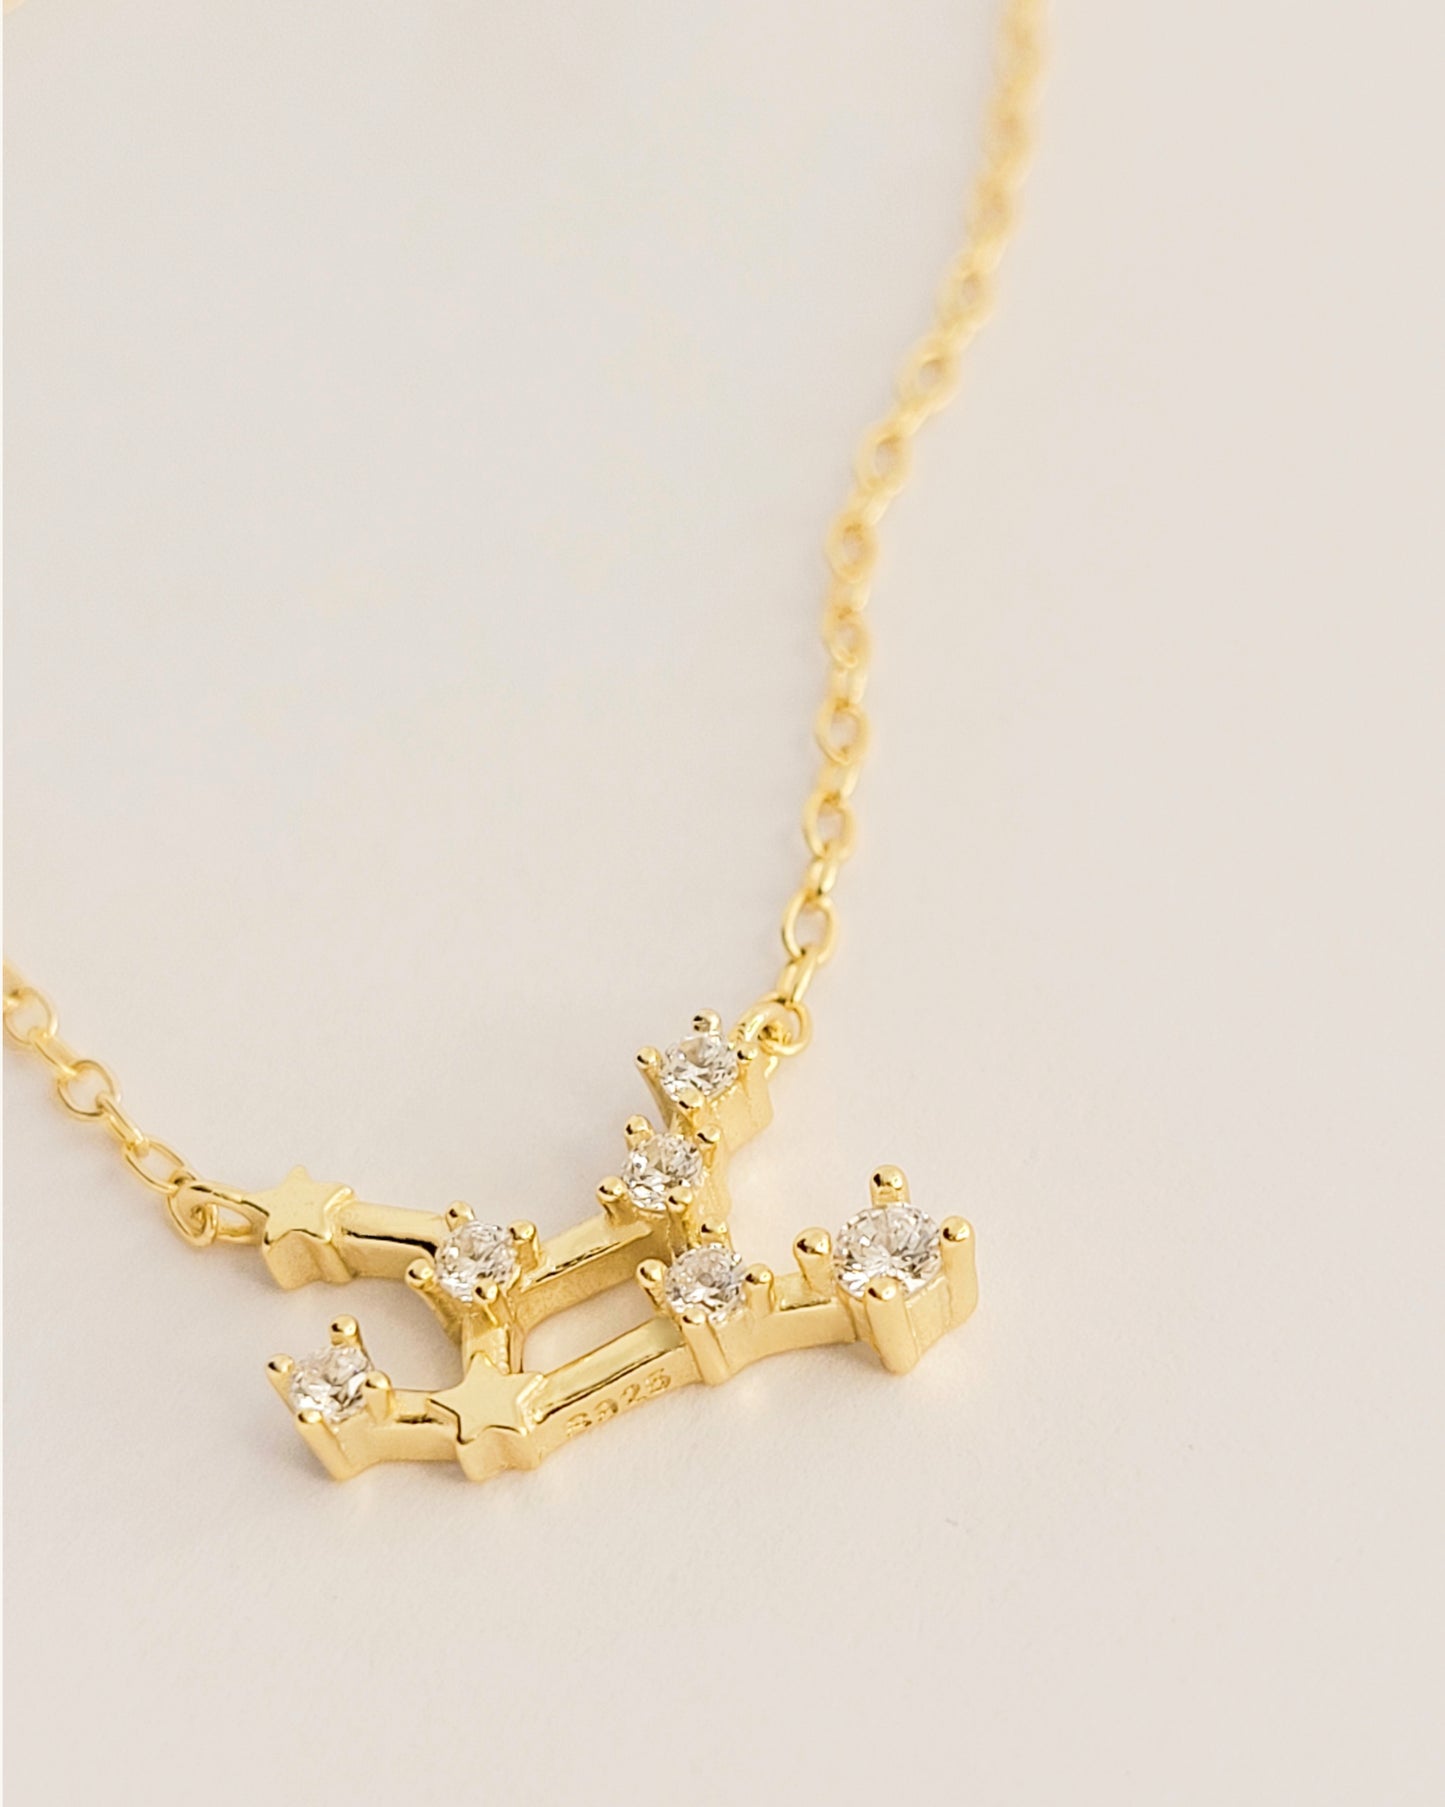 virgo necklace constellation star sign